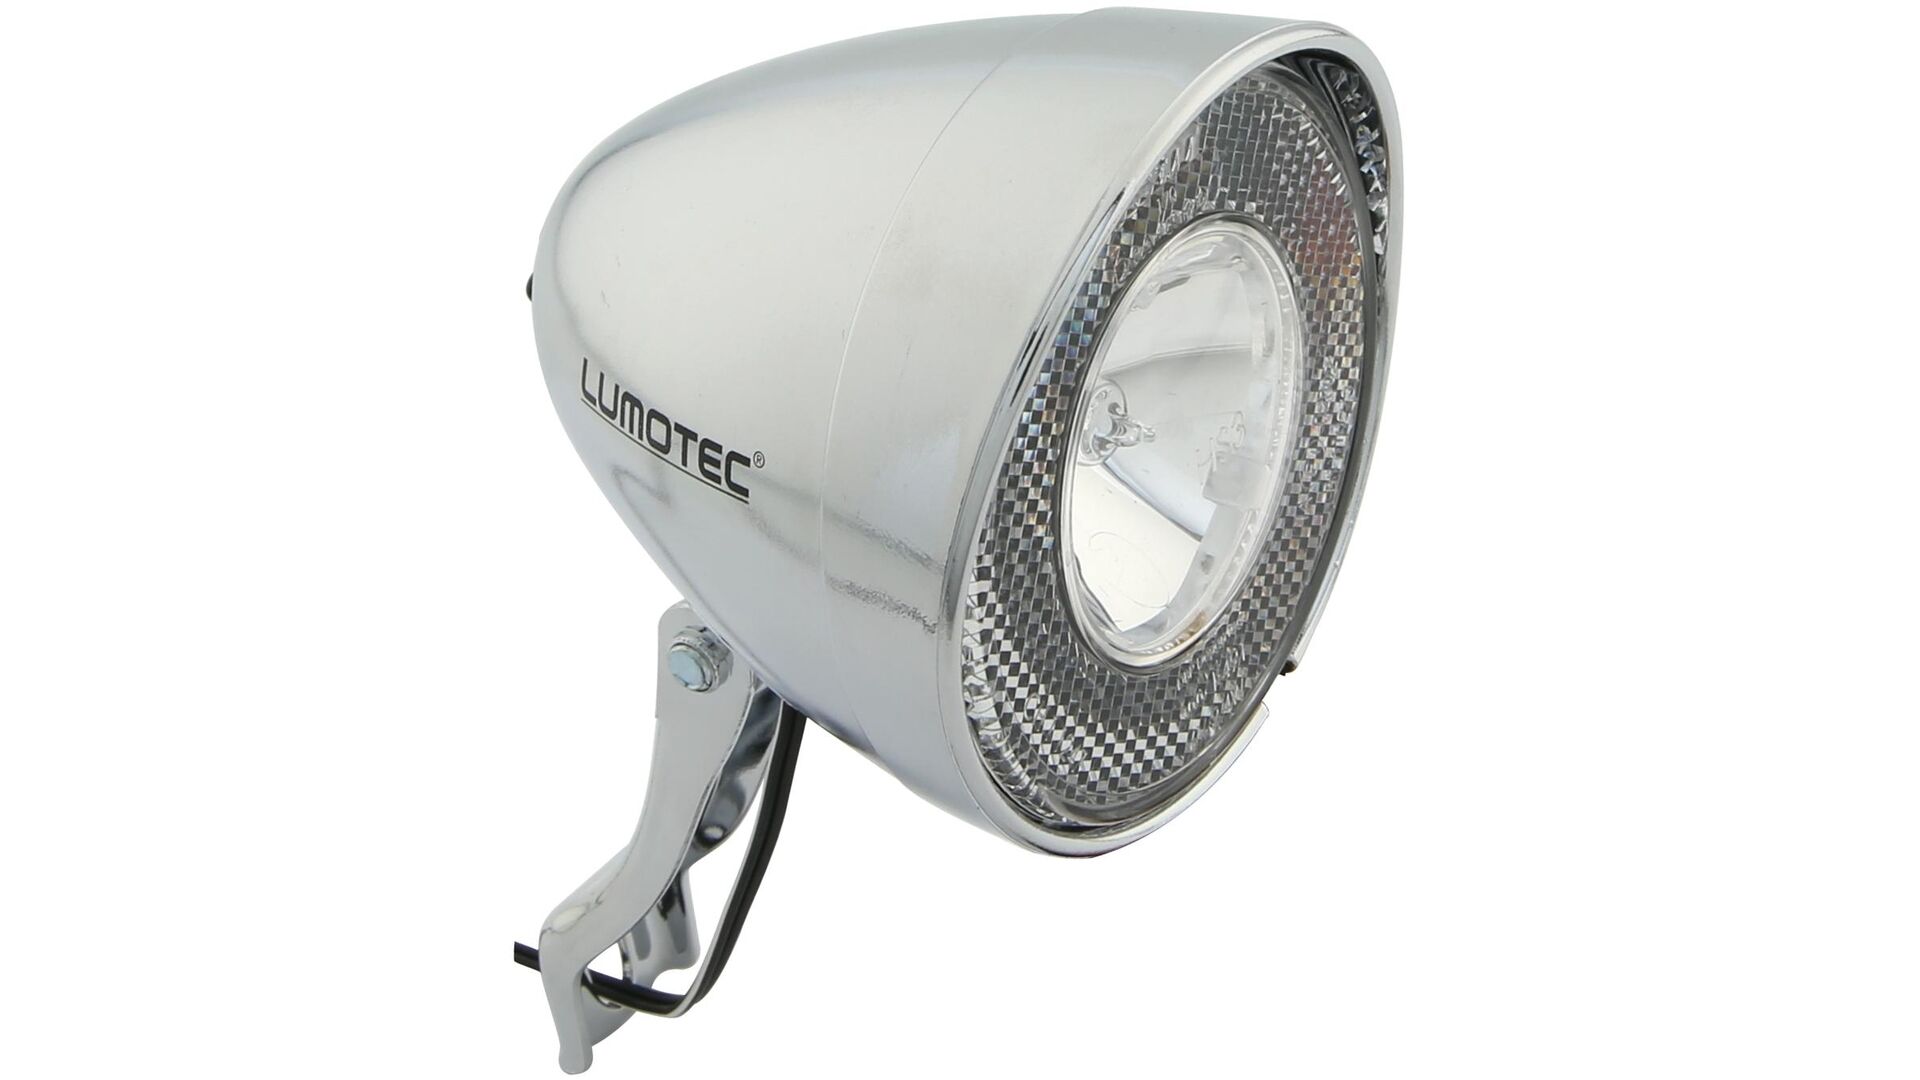 Fahrrad Lampe Scheinwerfer Licht Retro Halogen 10 Lux Schalter